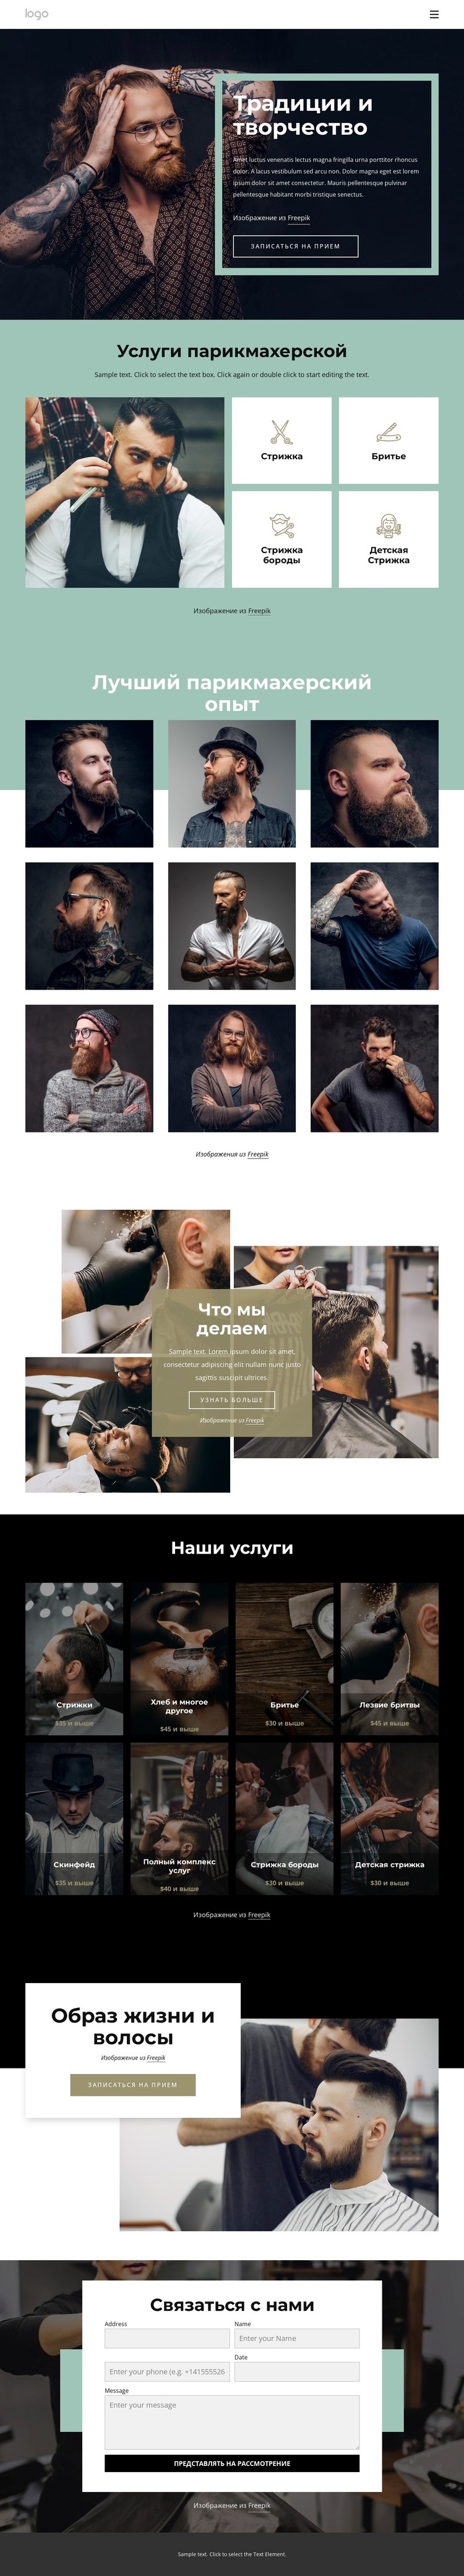 Общественный парикмахерский салон Мокап веб-сайта